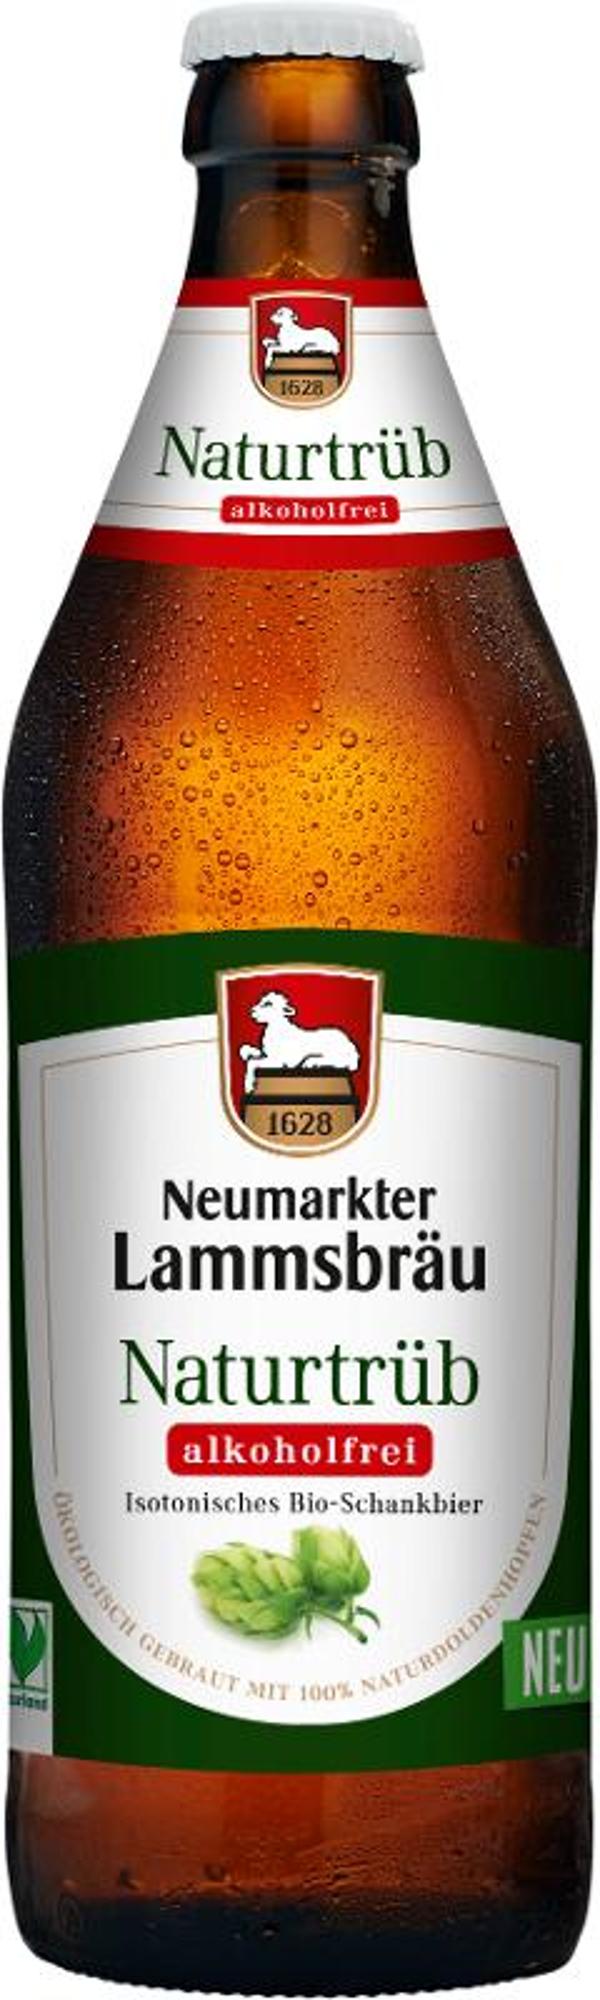 Produktfoto zu Lammsbräu Naturtrüb alk.frei